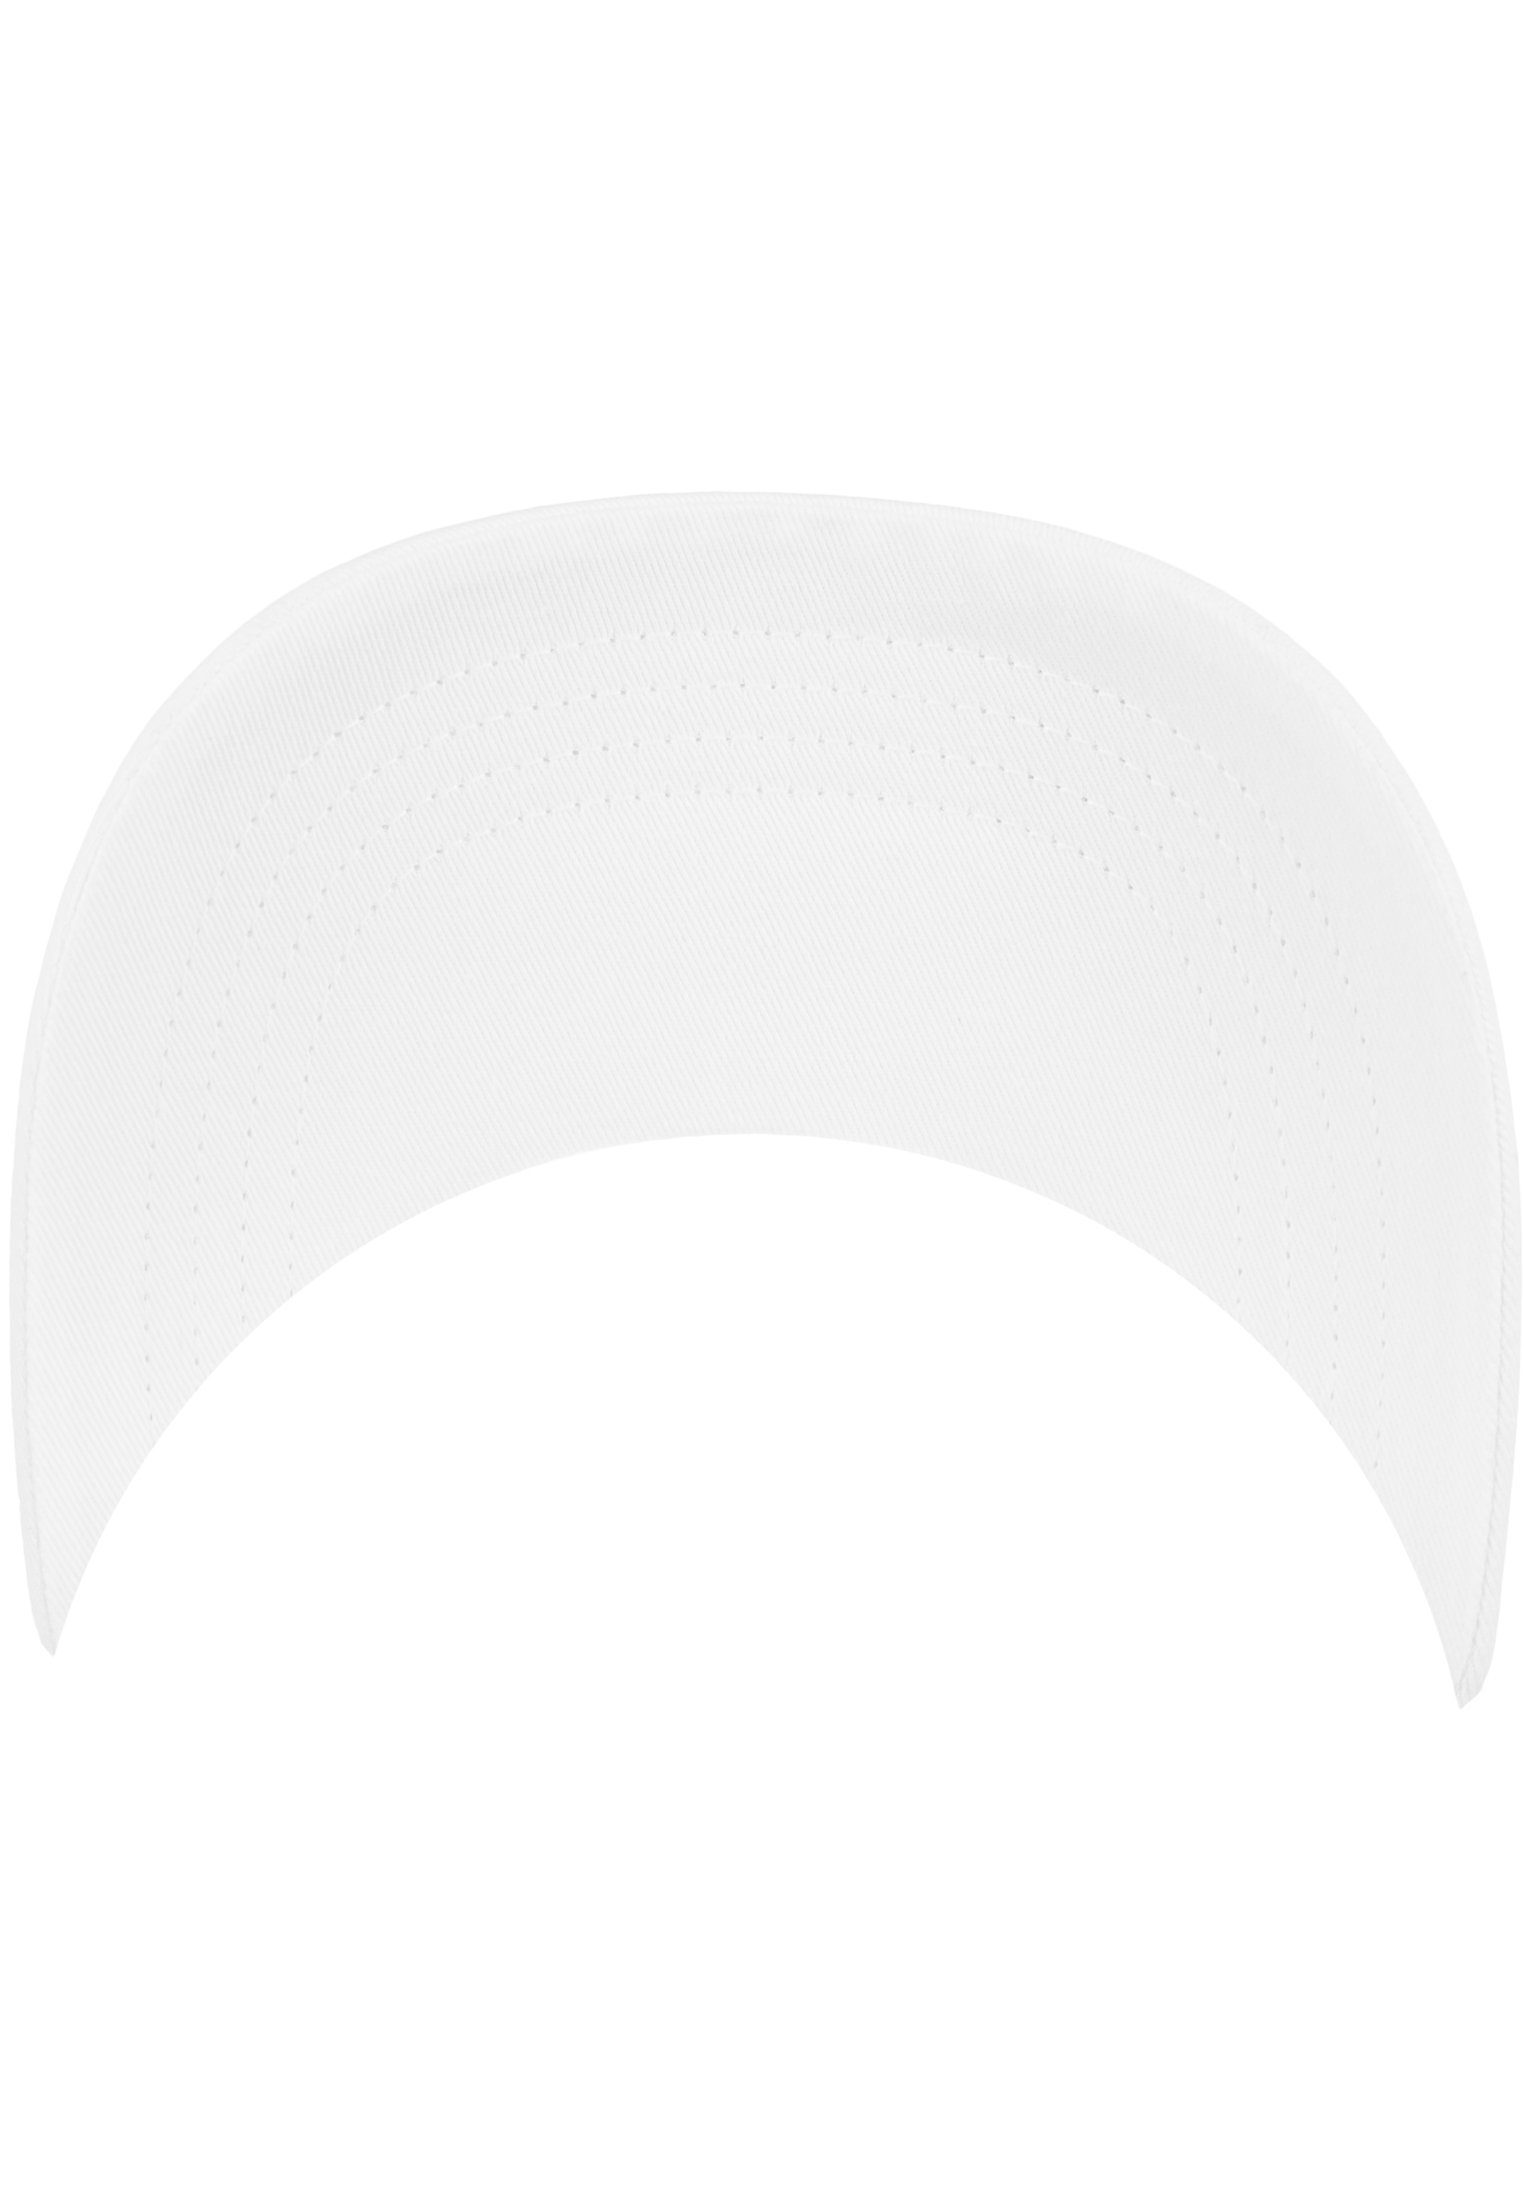 Profile Cotton White Low Cap 6245CM Flexfit Flexfit Flex Twill